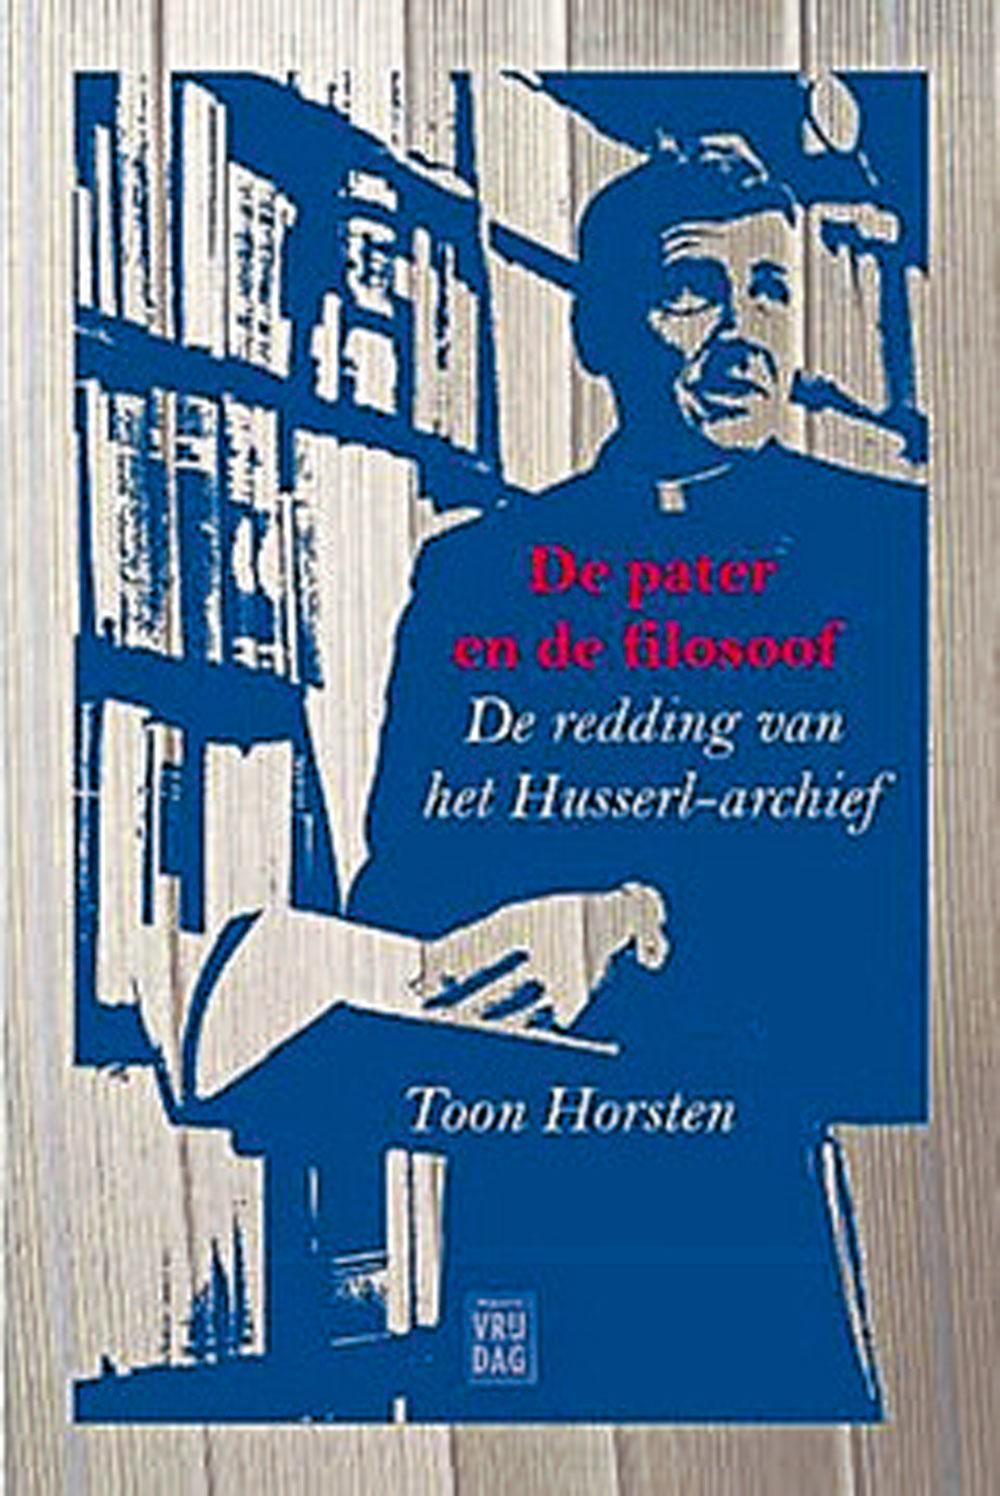 Toon Horsten, De pater en de filosoof, Vrijdag, 296 blz., 22,50 euro